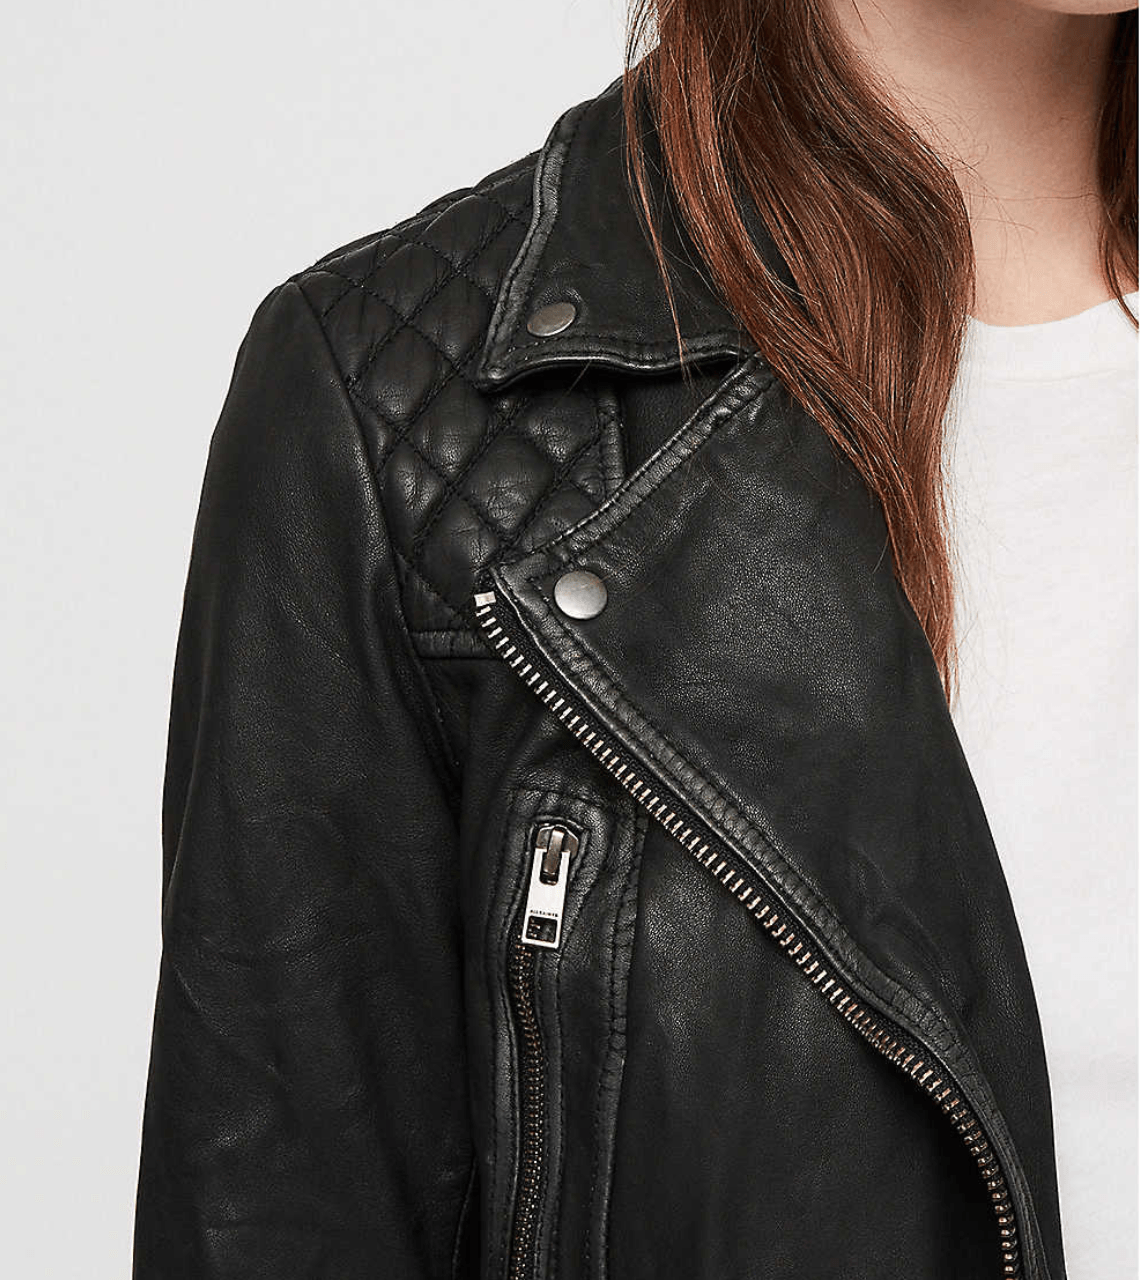 Women’s Distressed Black Leather Biker Jacket Zipper